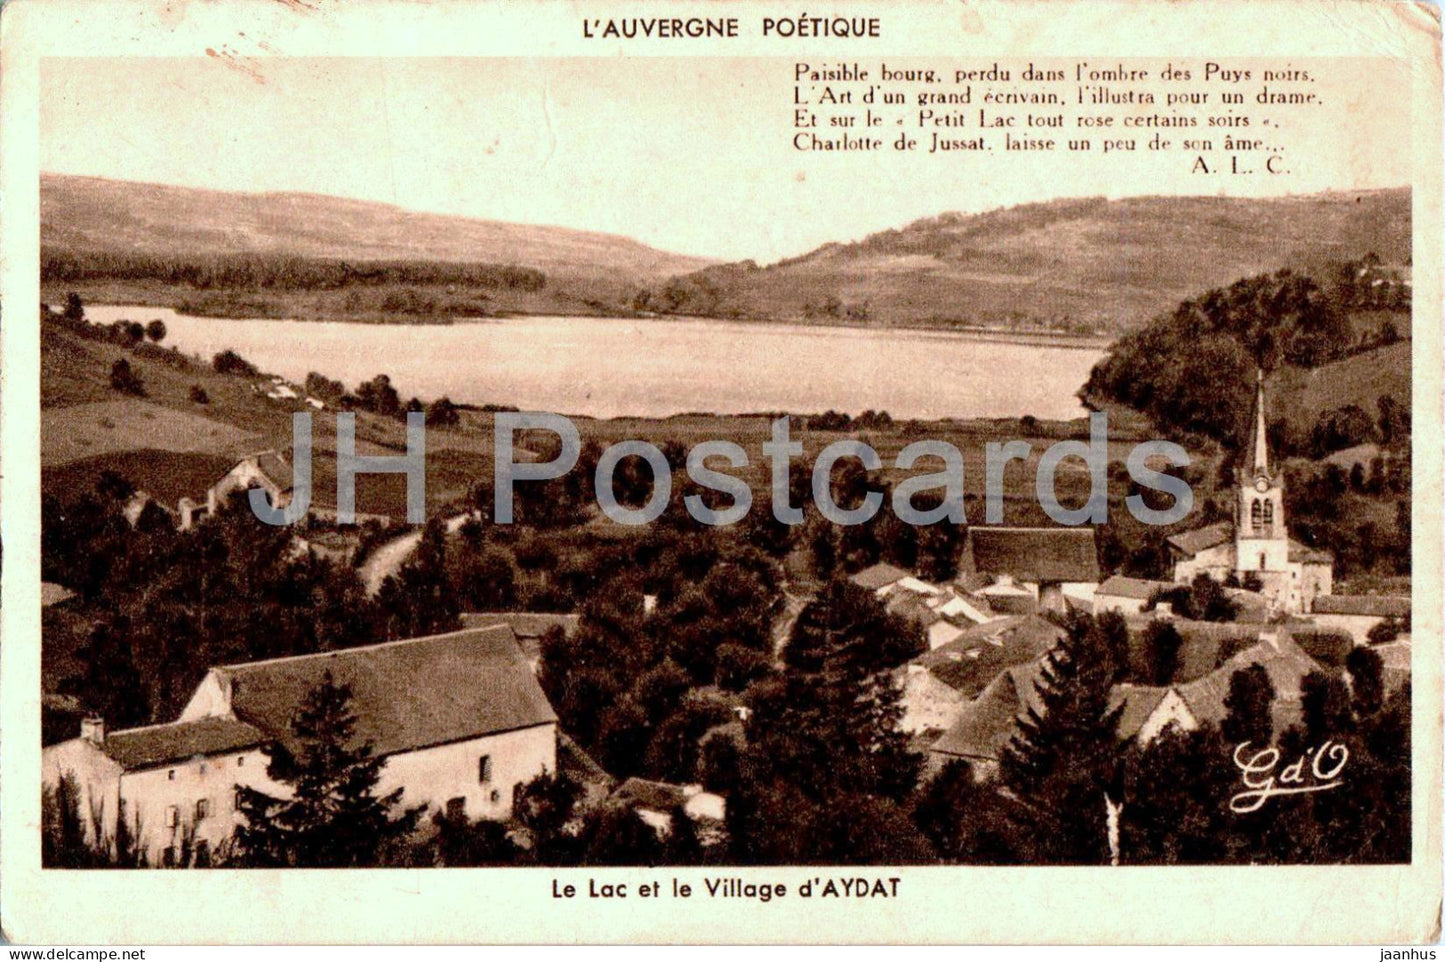 Le Lac et le Village d'Ayat - L'Auvergne Poetique - old postcard - 1950 - France - used - JH Postcards